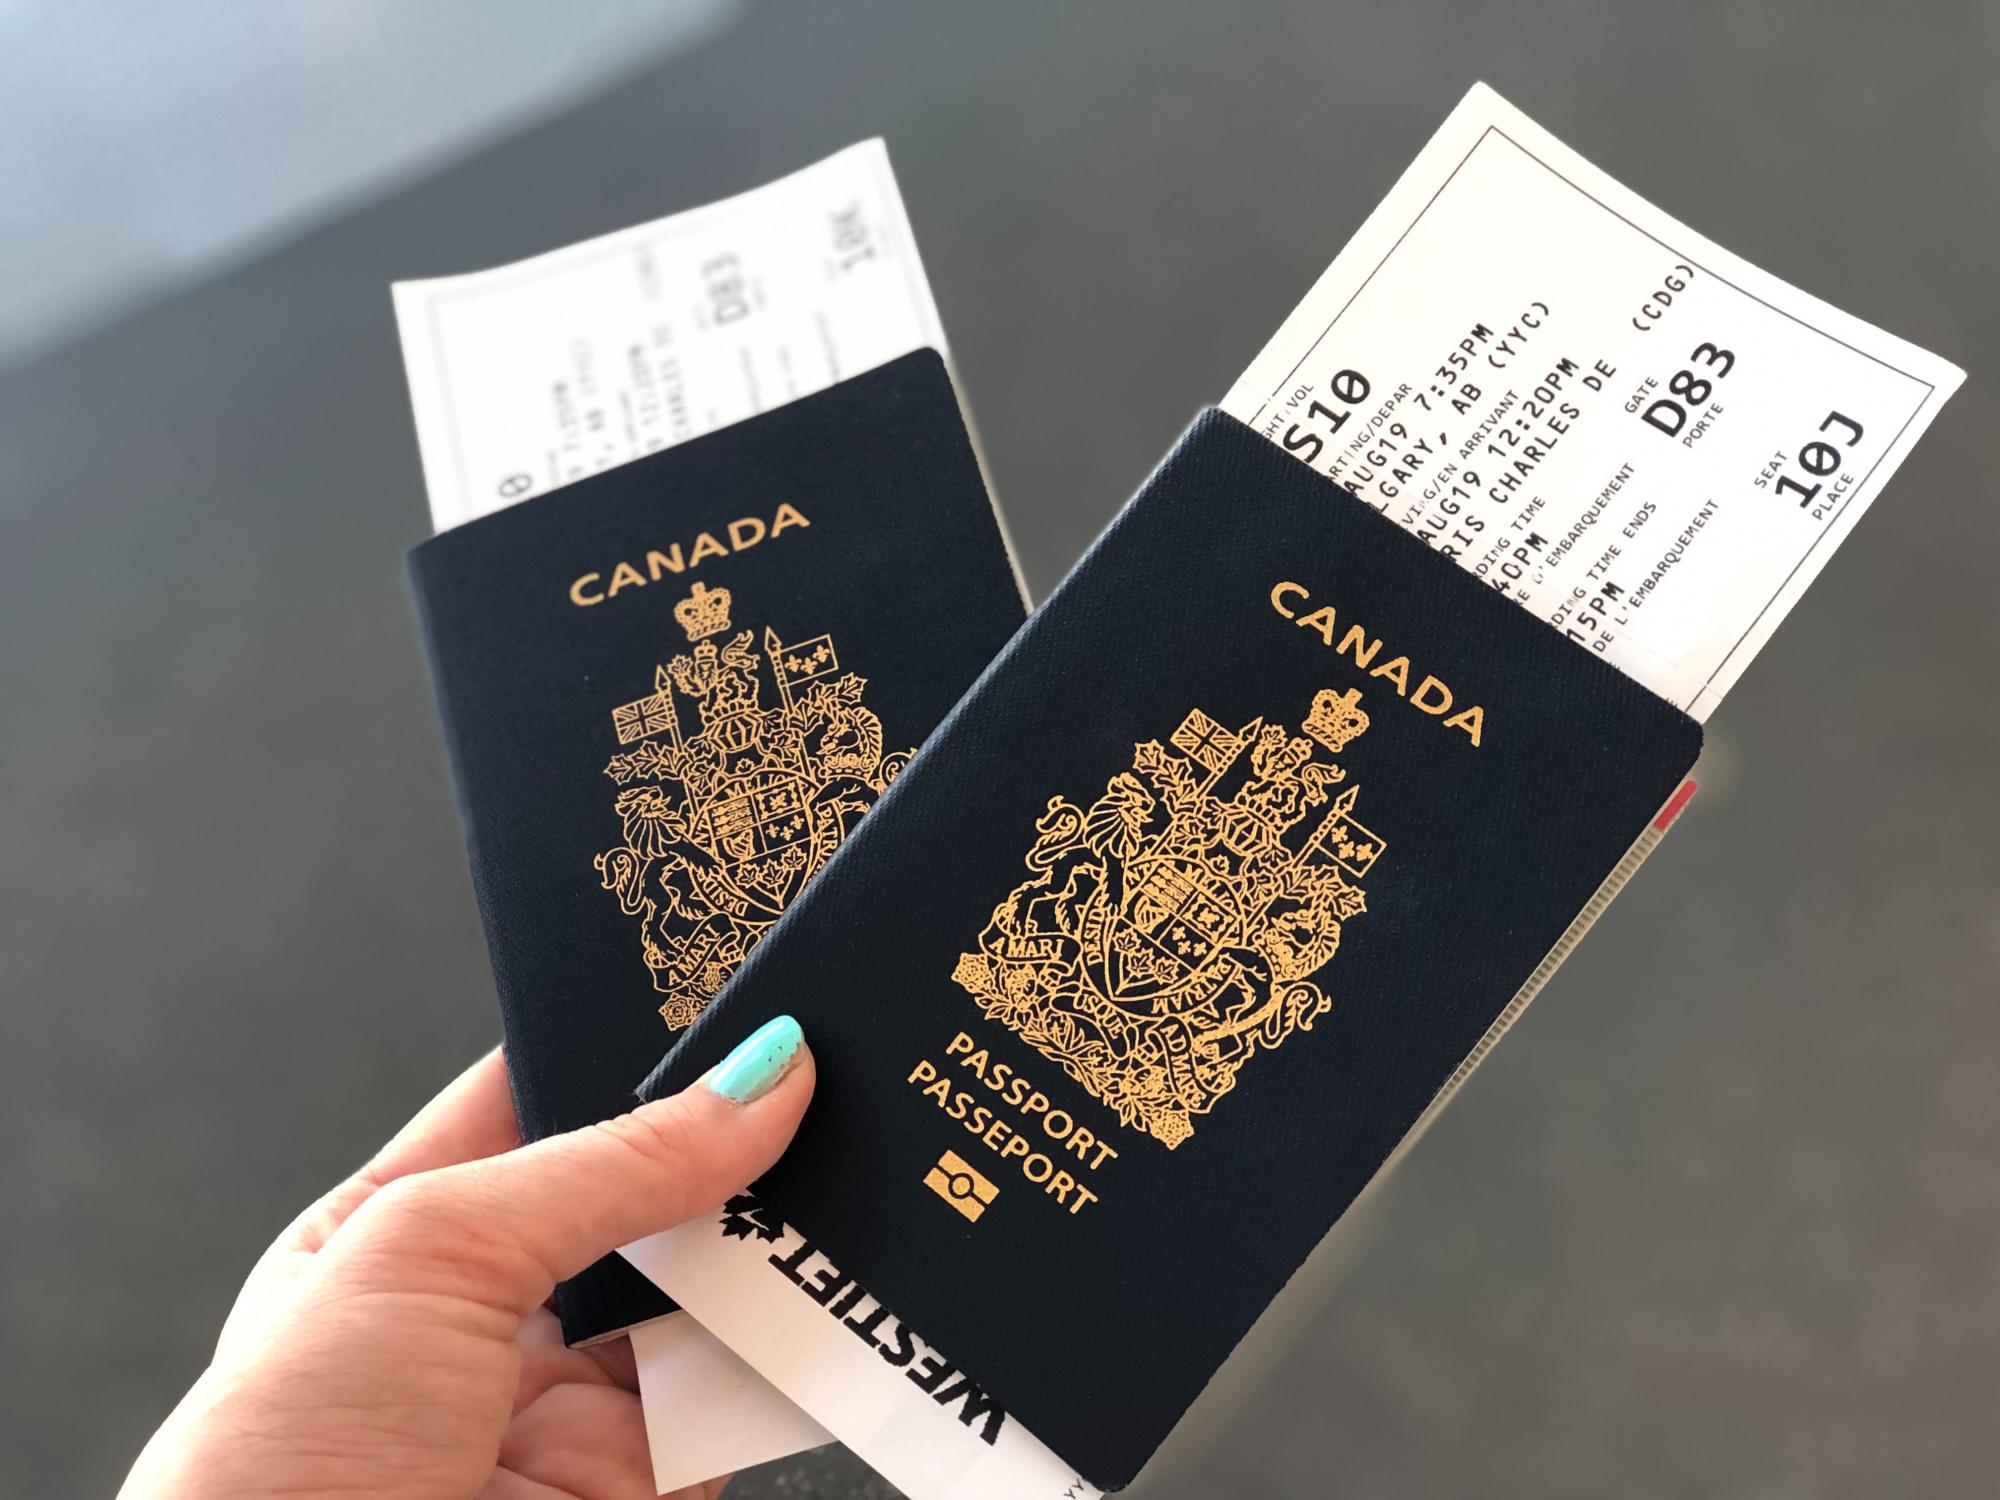 Безкоштовні авіаквитки для українців до Канади: як їх отримати